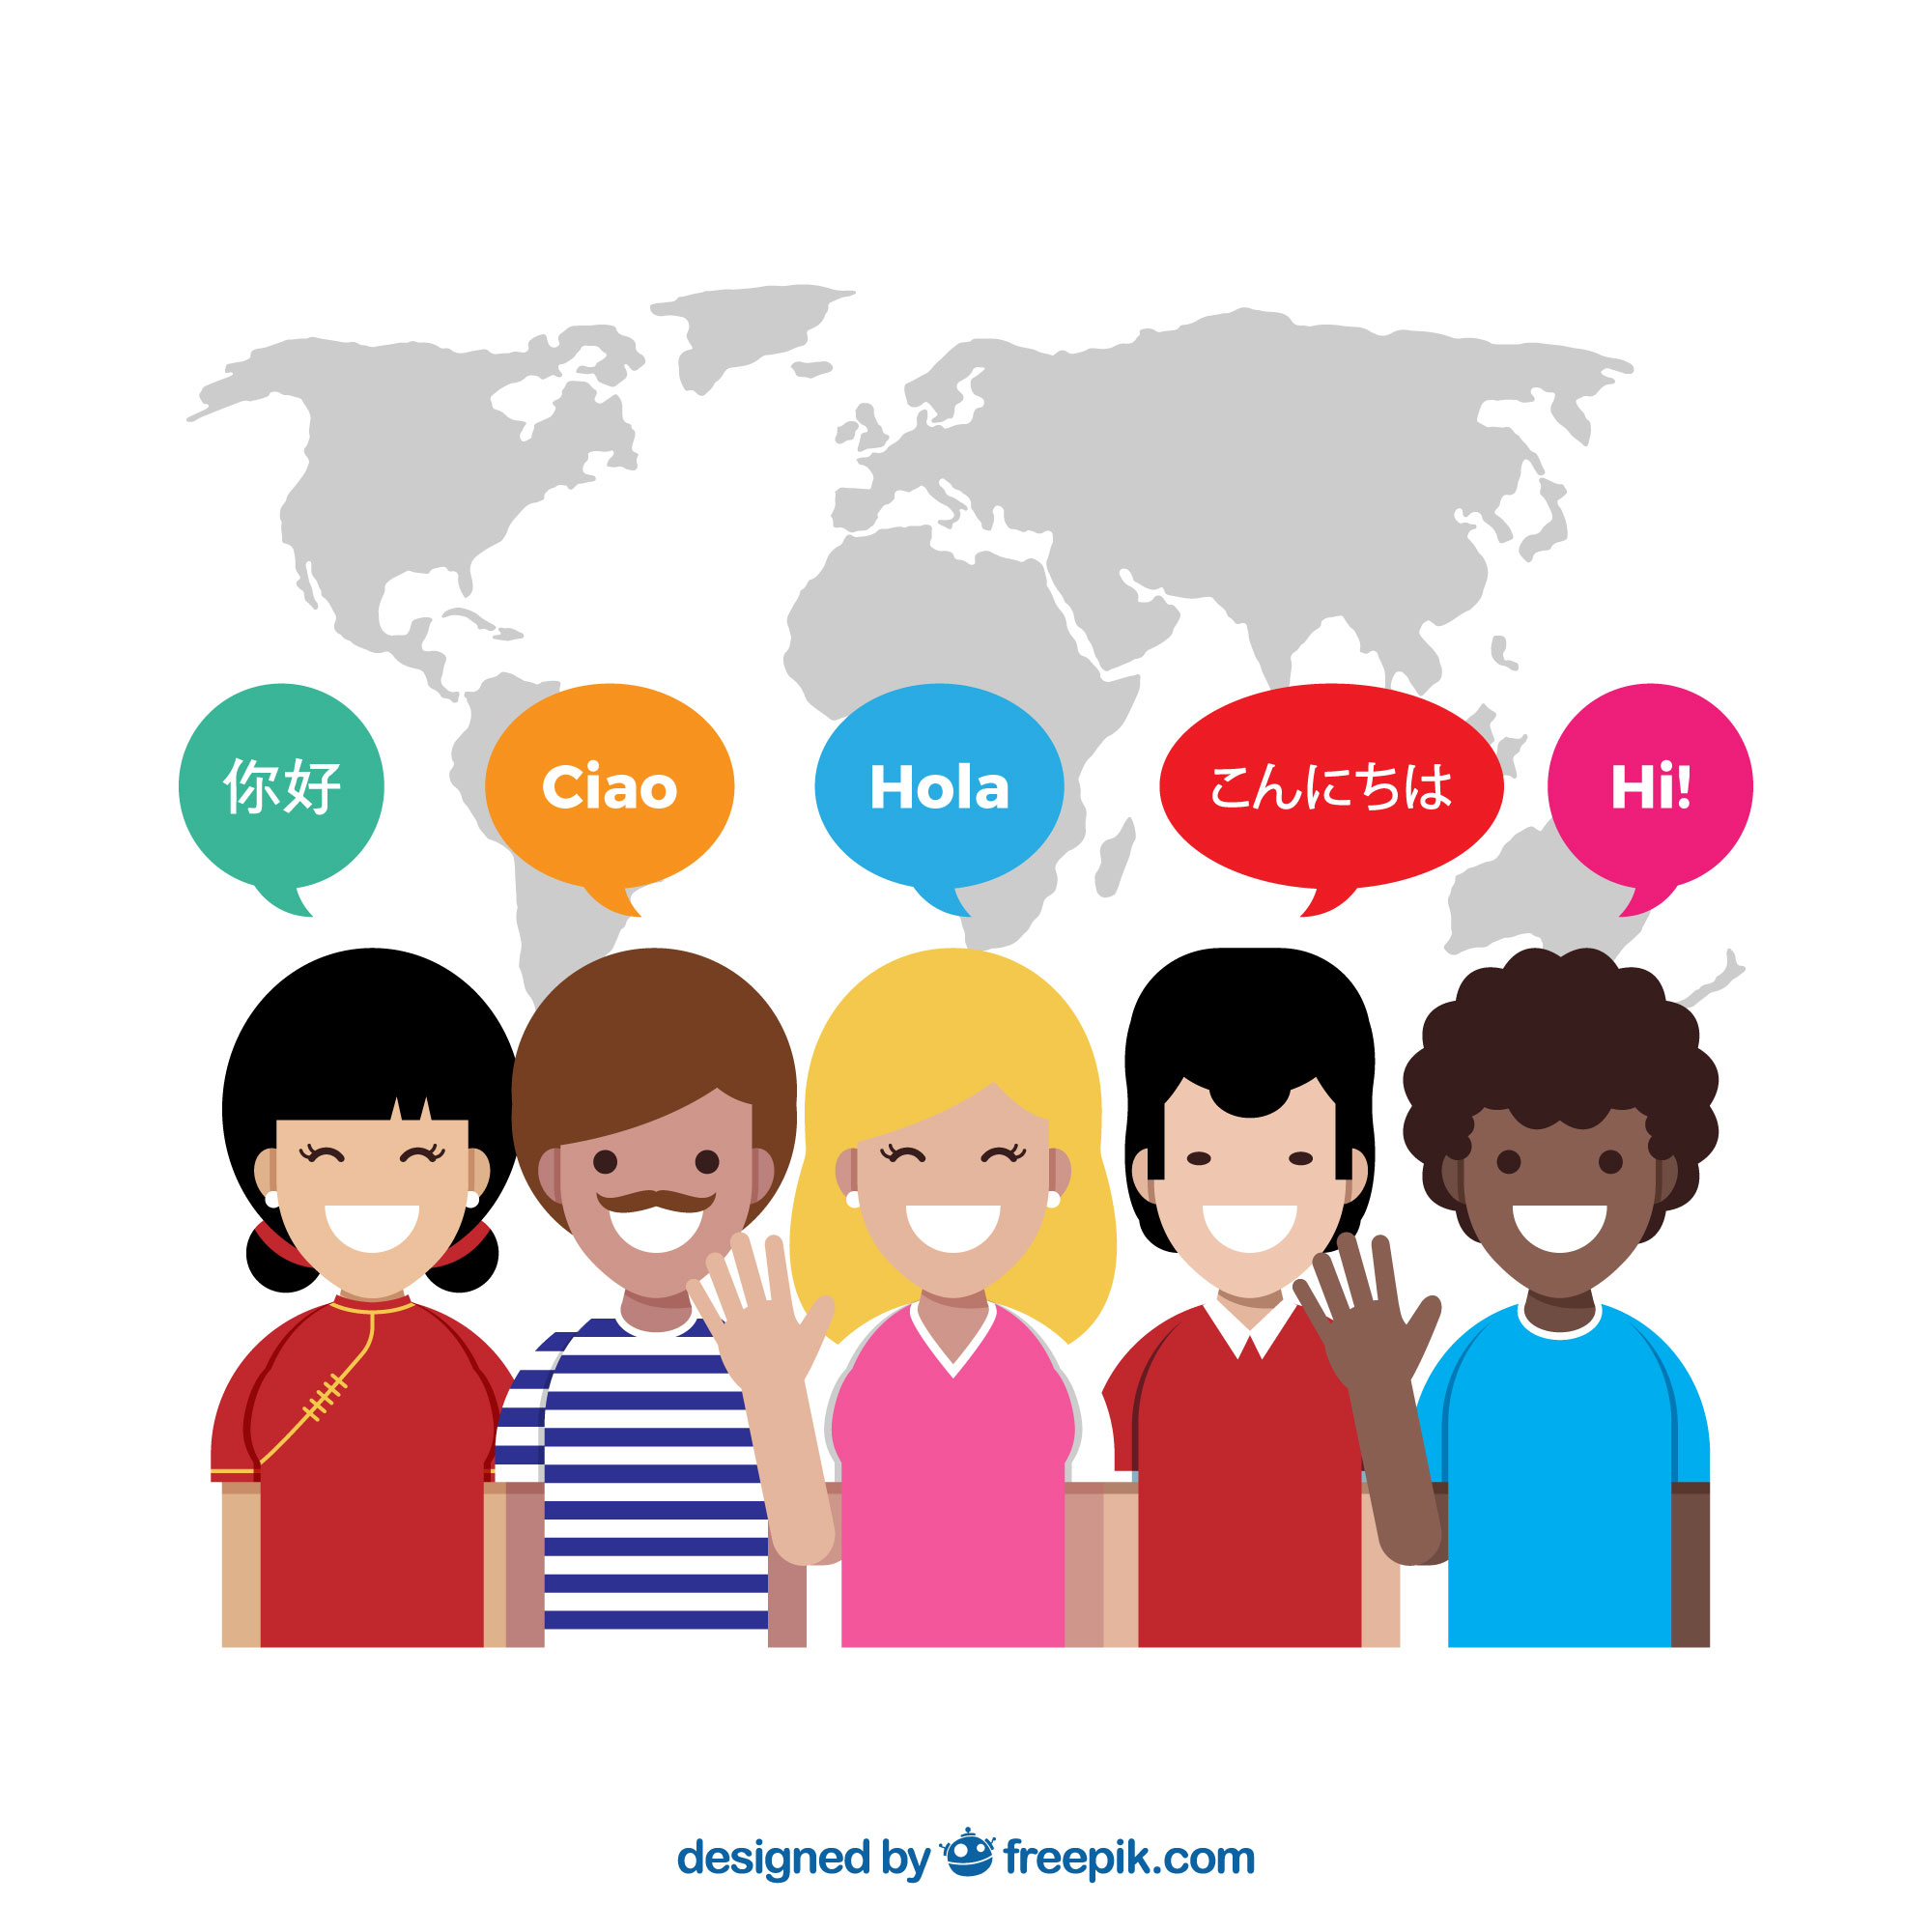 Dialog Sprachreisen: Die erste Wahl für Sprachreisen weltweit